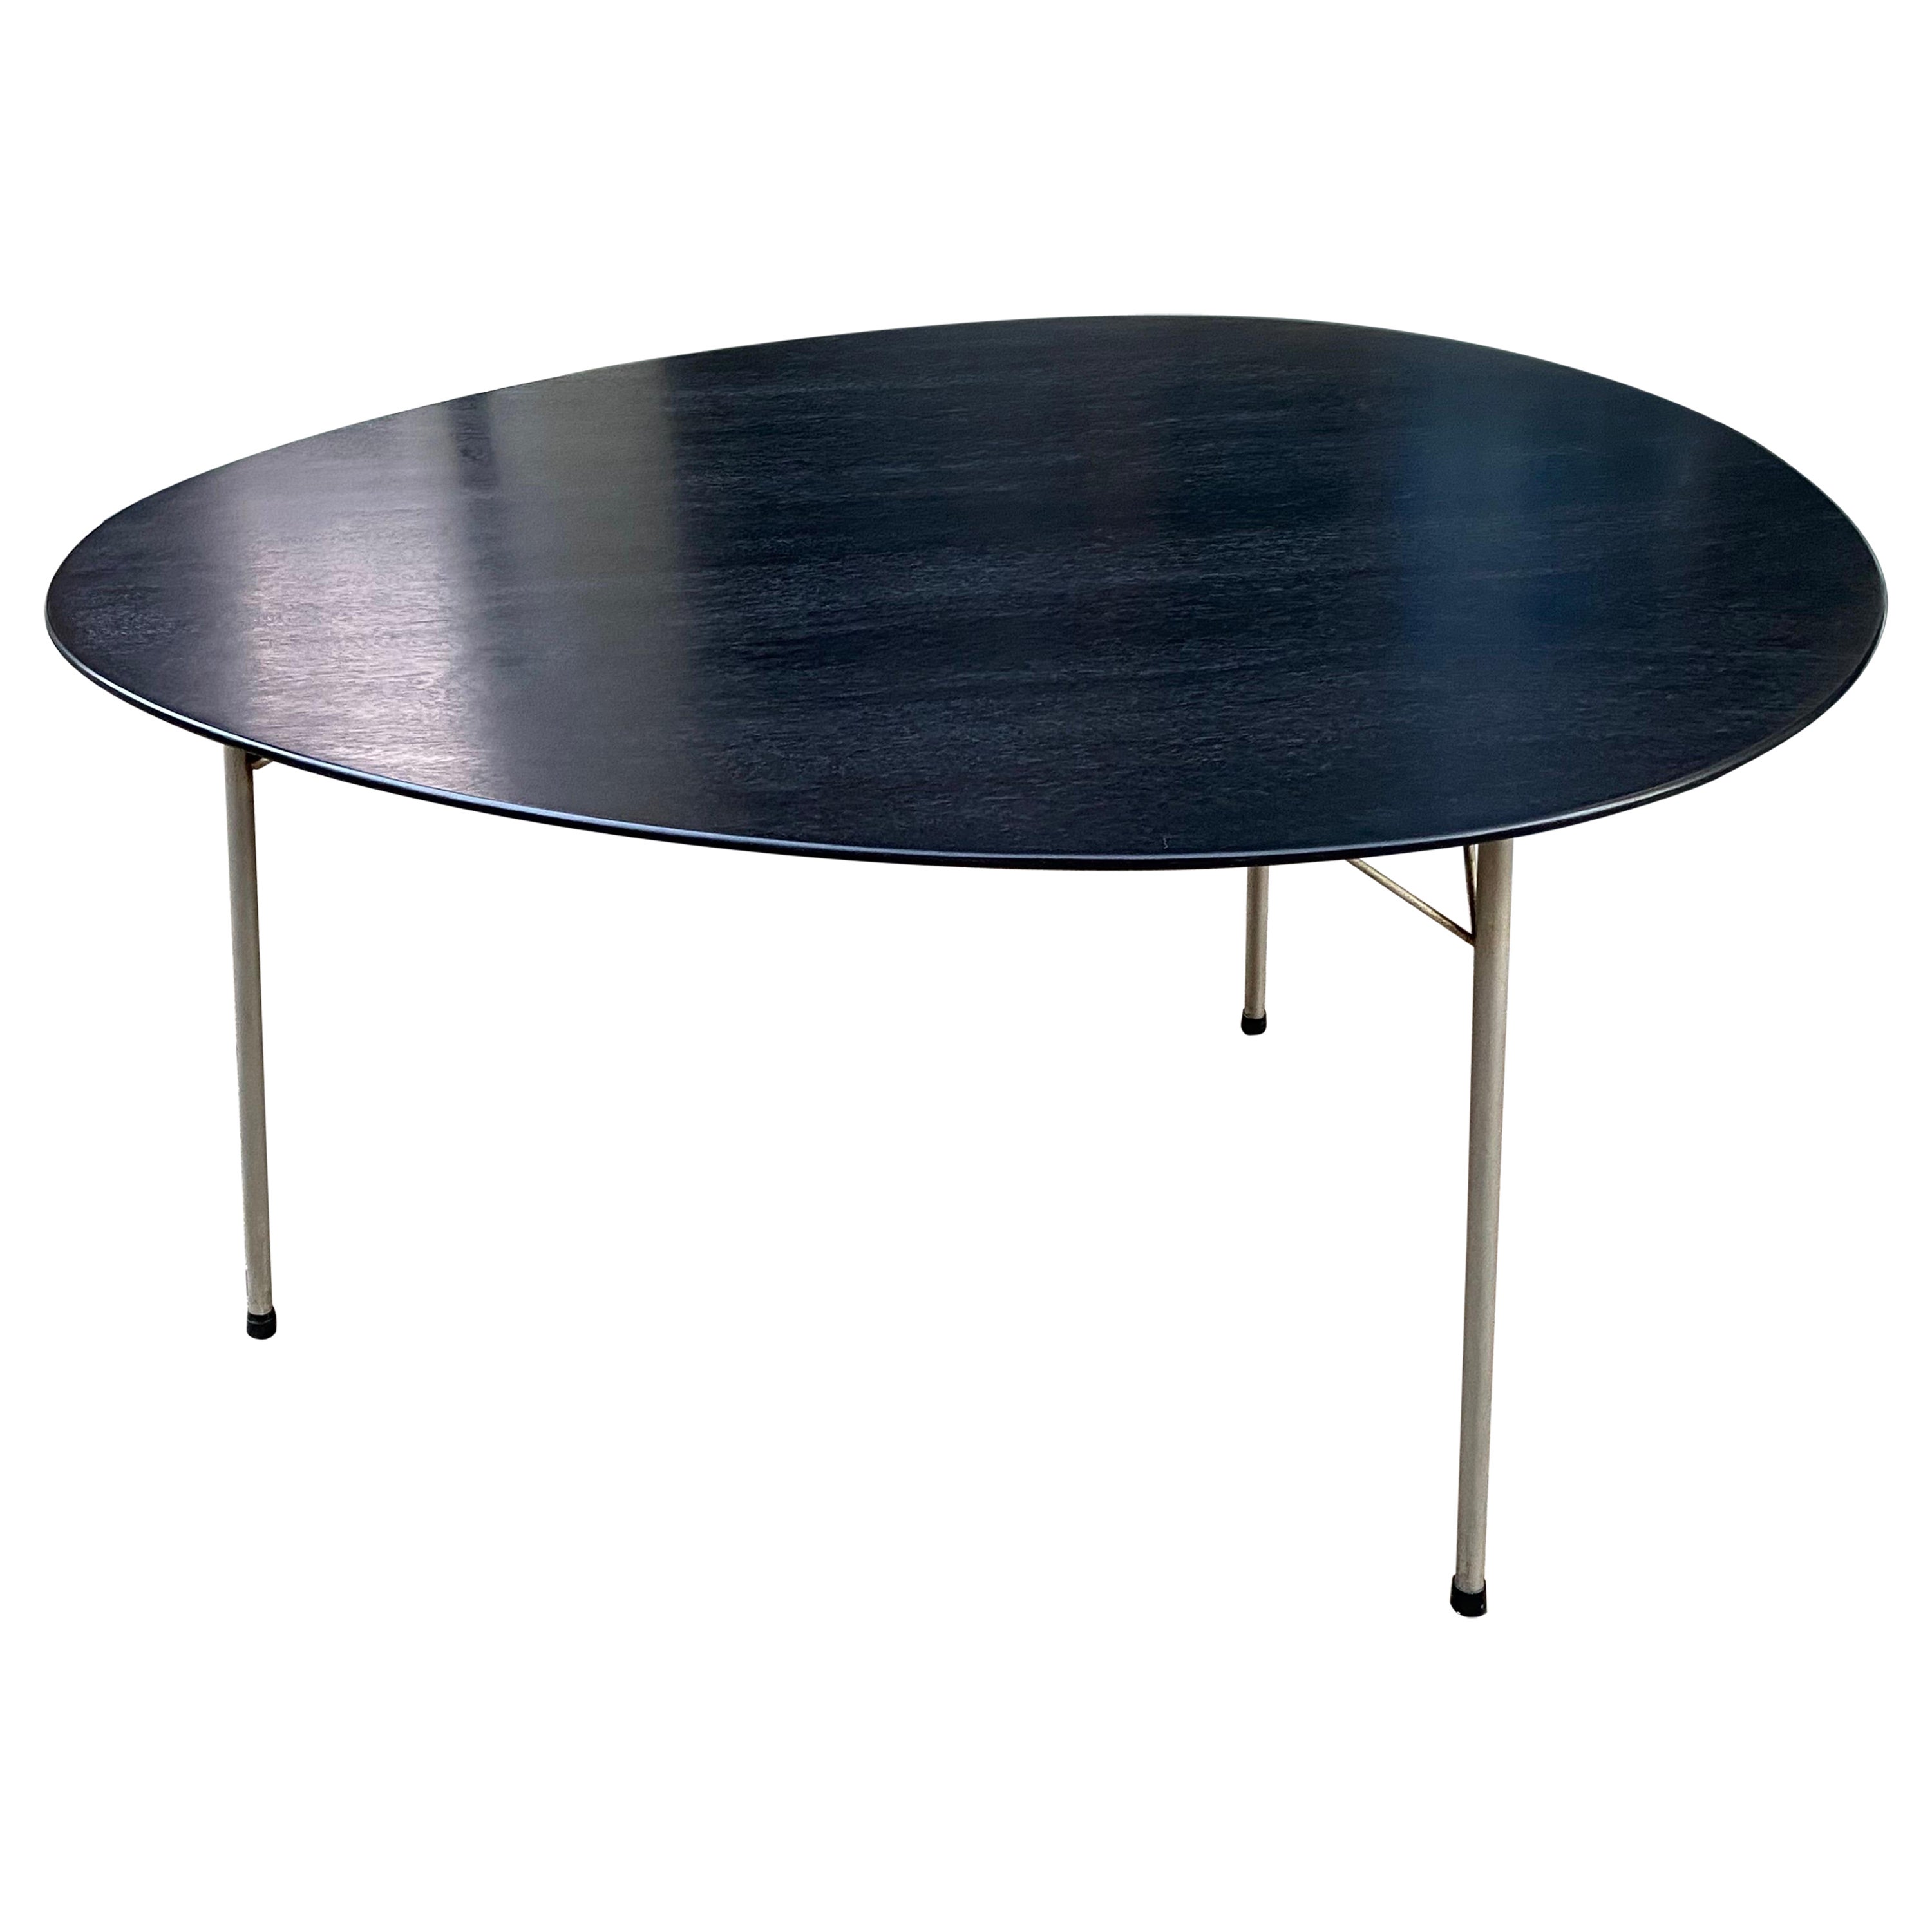 Arne Jacobsen Black Egg Table